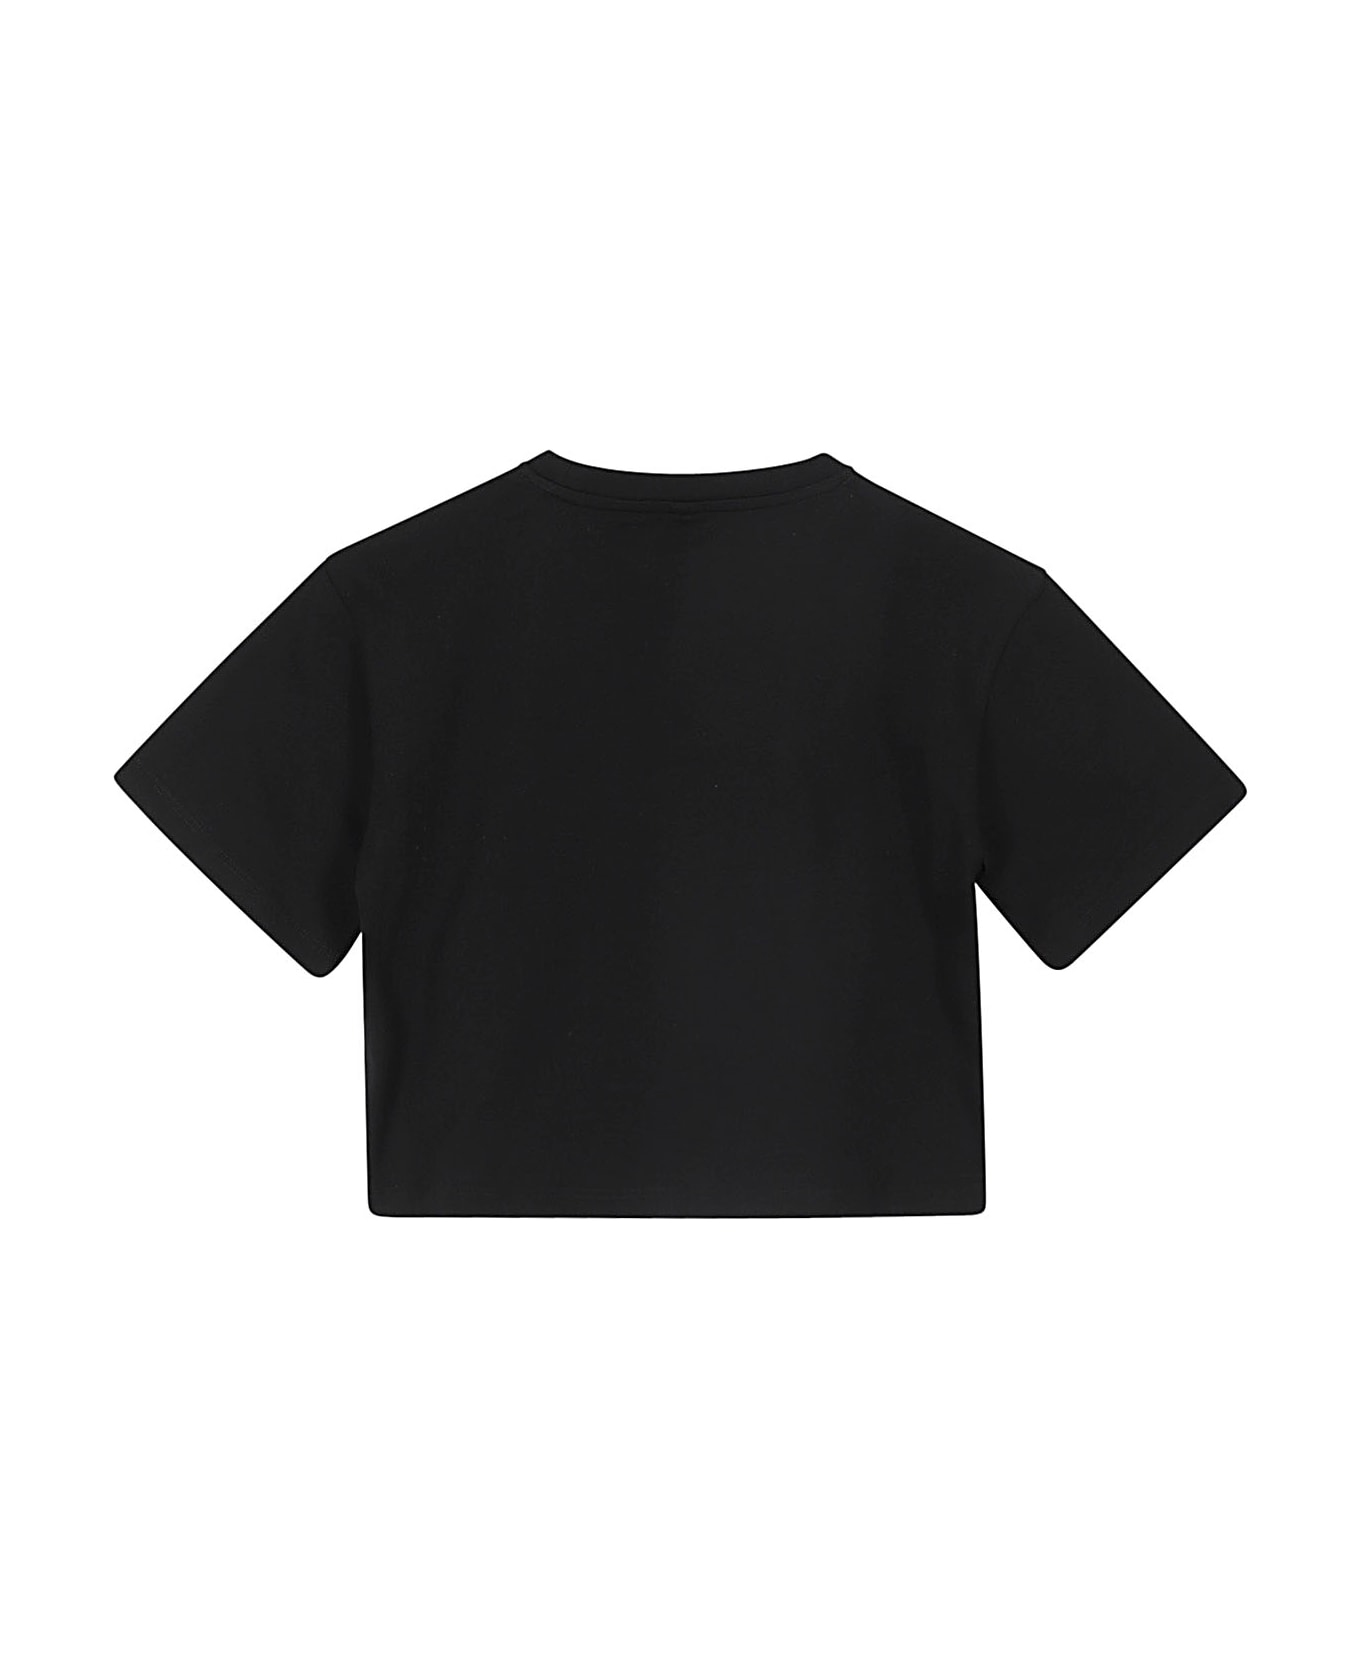 Stella McCartney Kids Sport - Black Tシャツ＆ポロシャツ